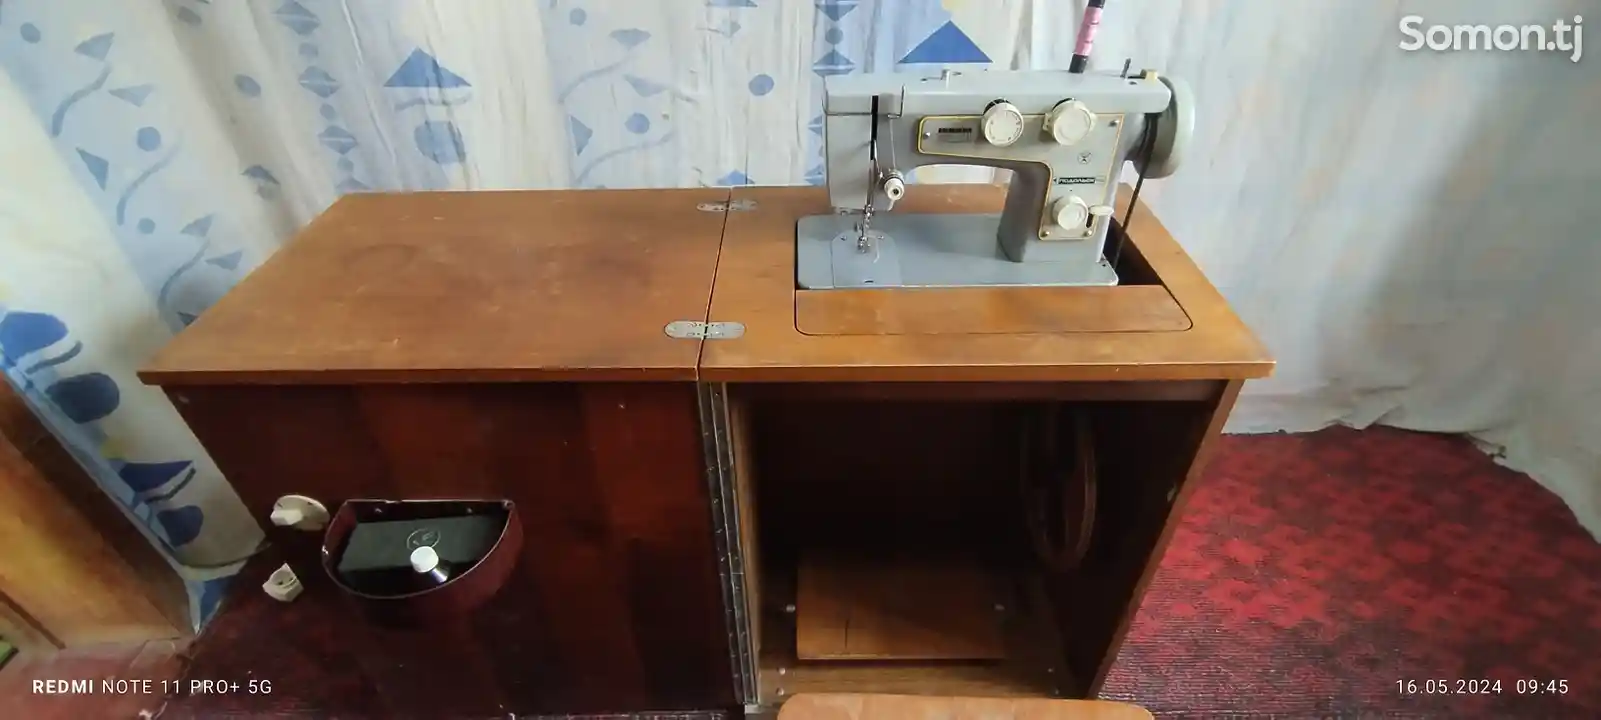 Швейная машина Подольск 142-2